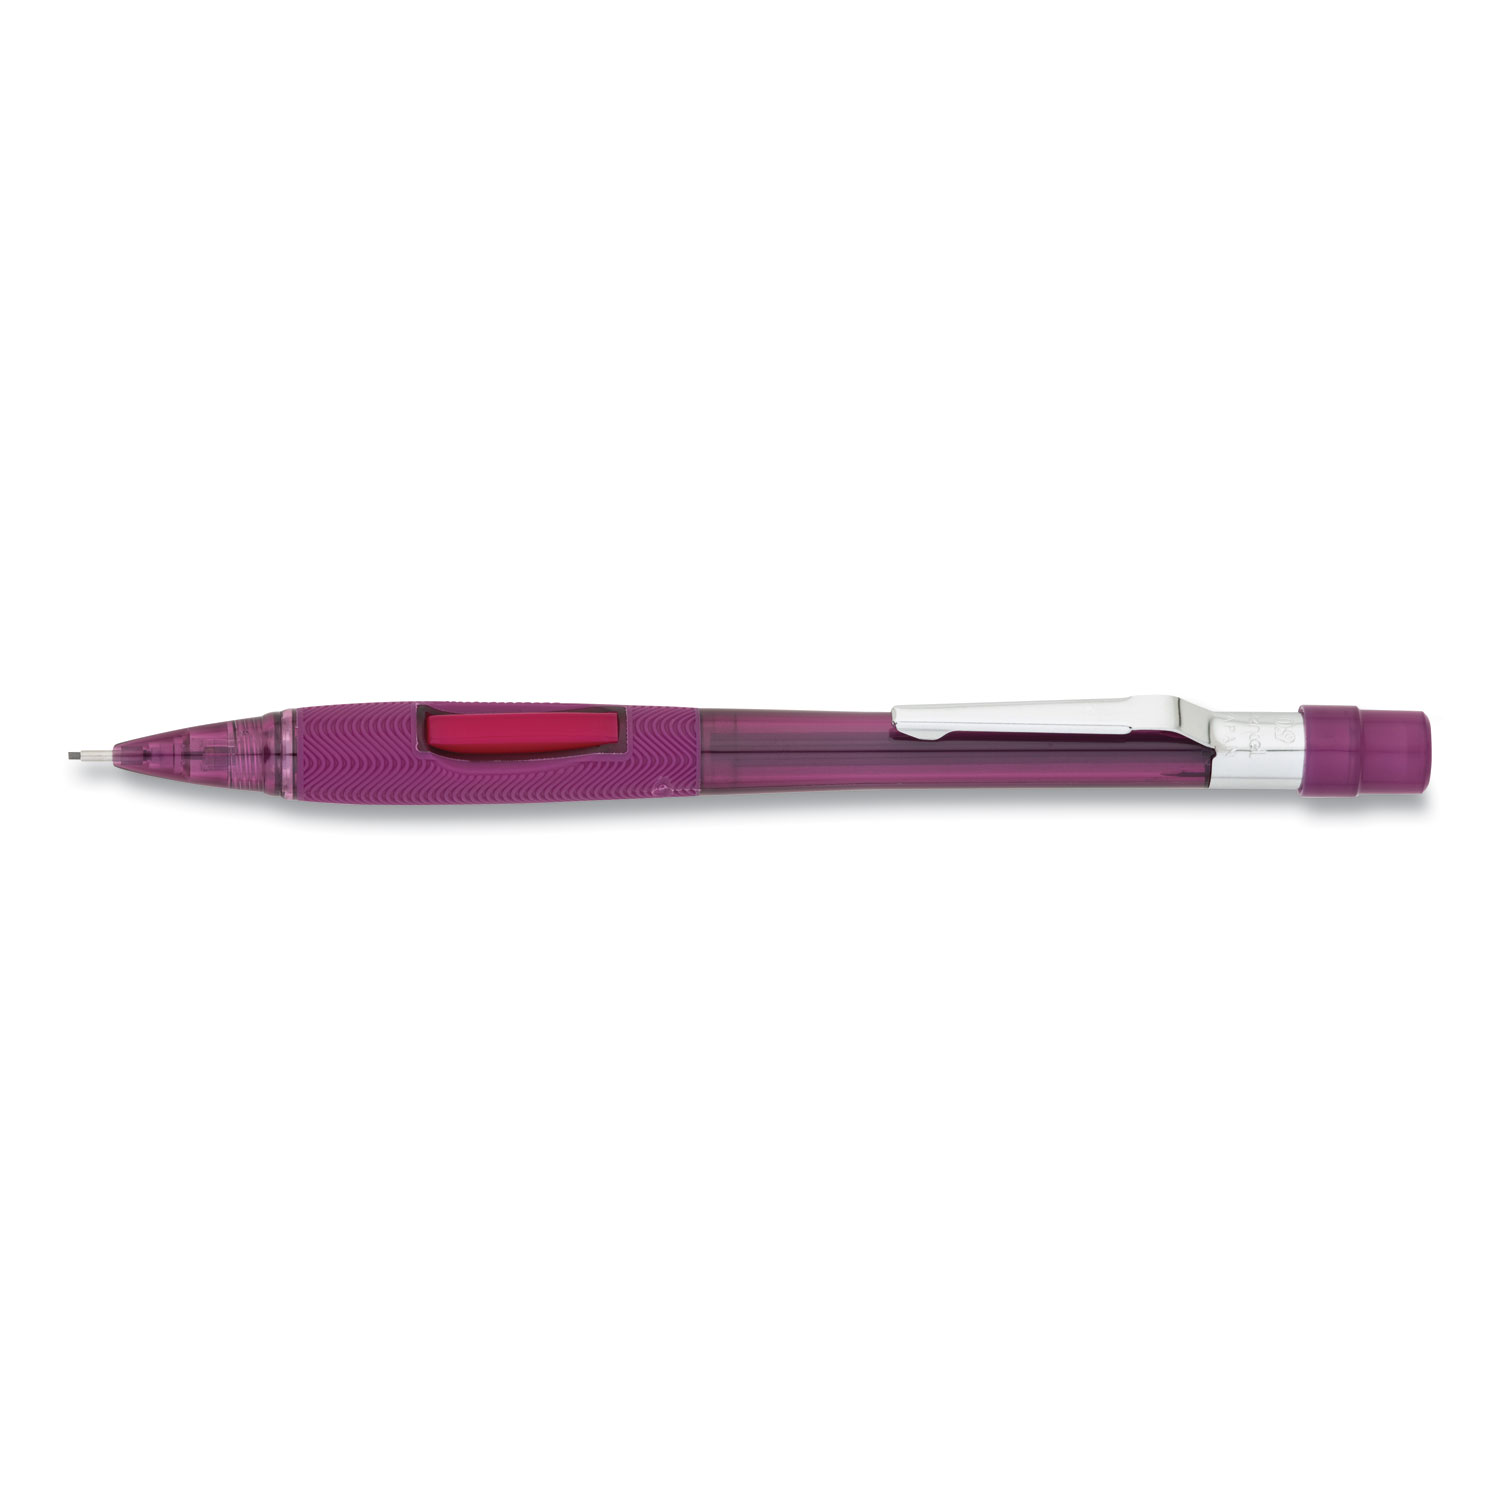  Pentel PD349TB Quicker Clicker Mechanical Pencil, 0.9 mm, HB (#2.5), Black Lead, Transparent Burgundy Barrel (PENPD349TB) 